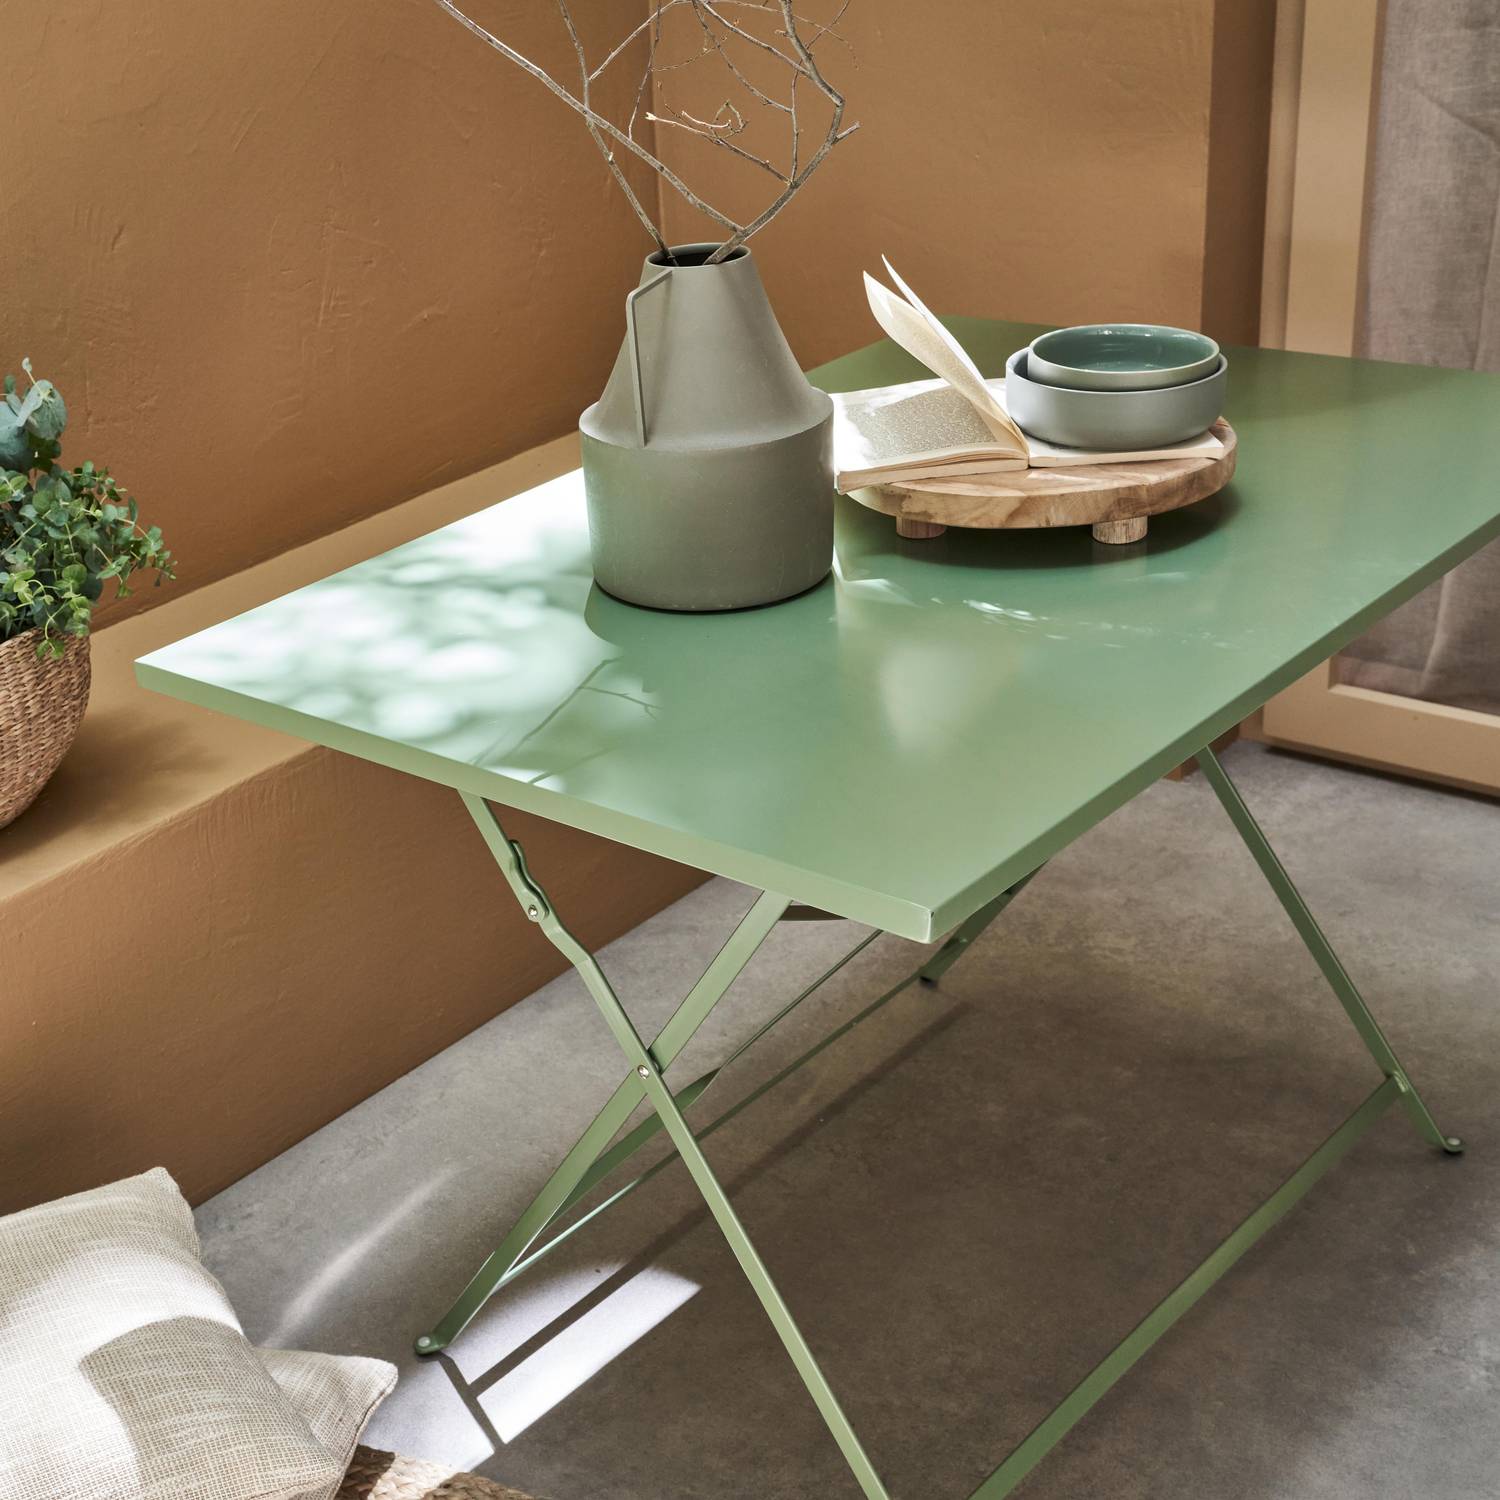 Emilia - Bistro tuintafel opvouwbaar - Rechthoekige tafel 110x70cm van staal met thermolak - Groengrijs Photo2